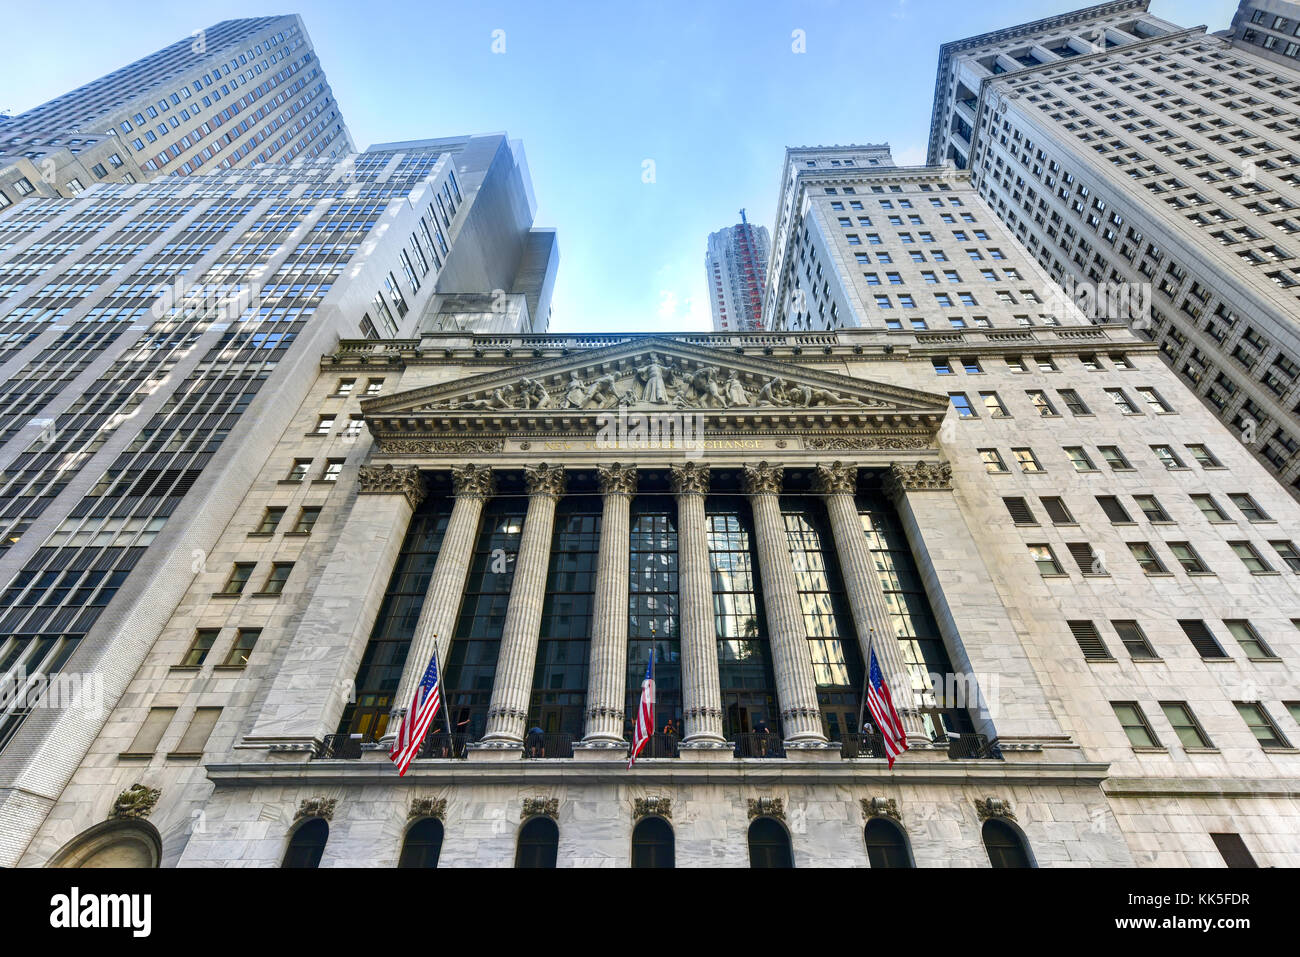 New York City - 29. Juni 2016: Das historische New York Stock Exchange an der Wall Street, eine der größten Börsen der Welt. Stockfoto